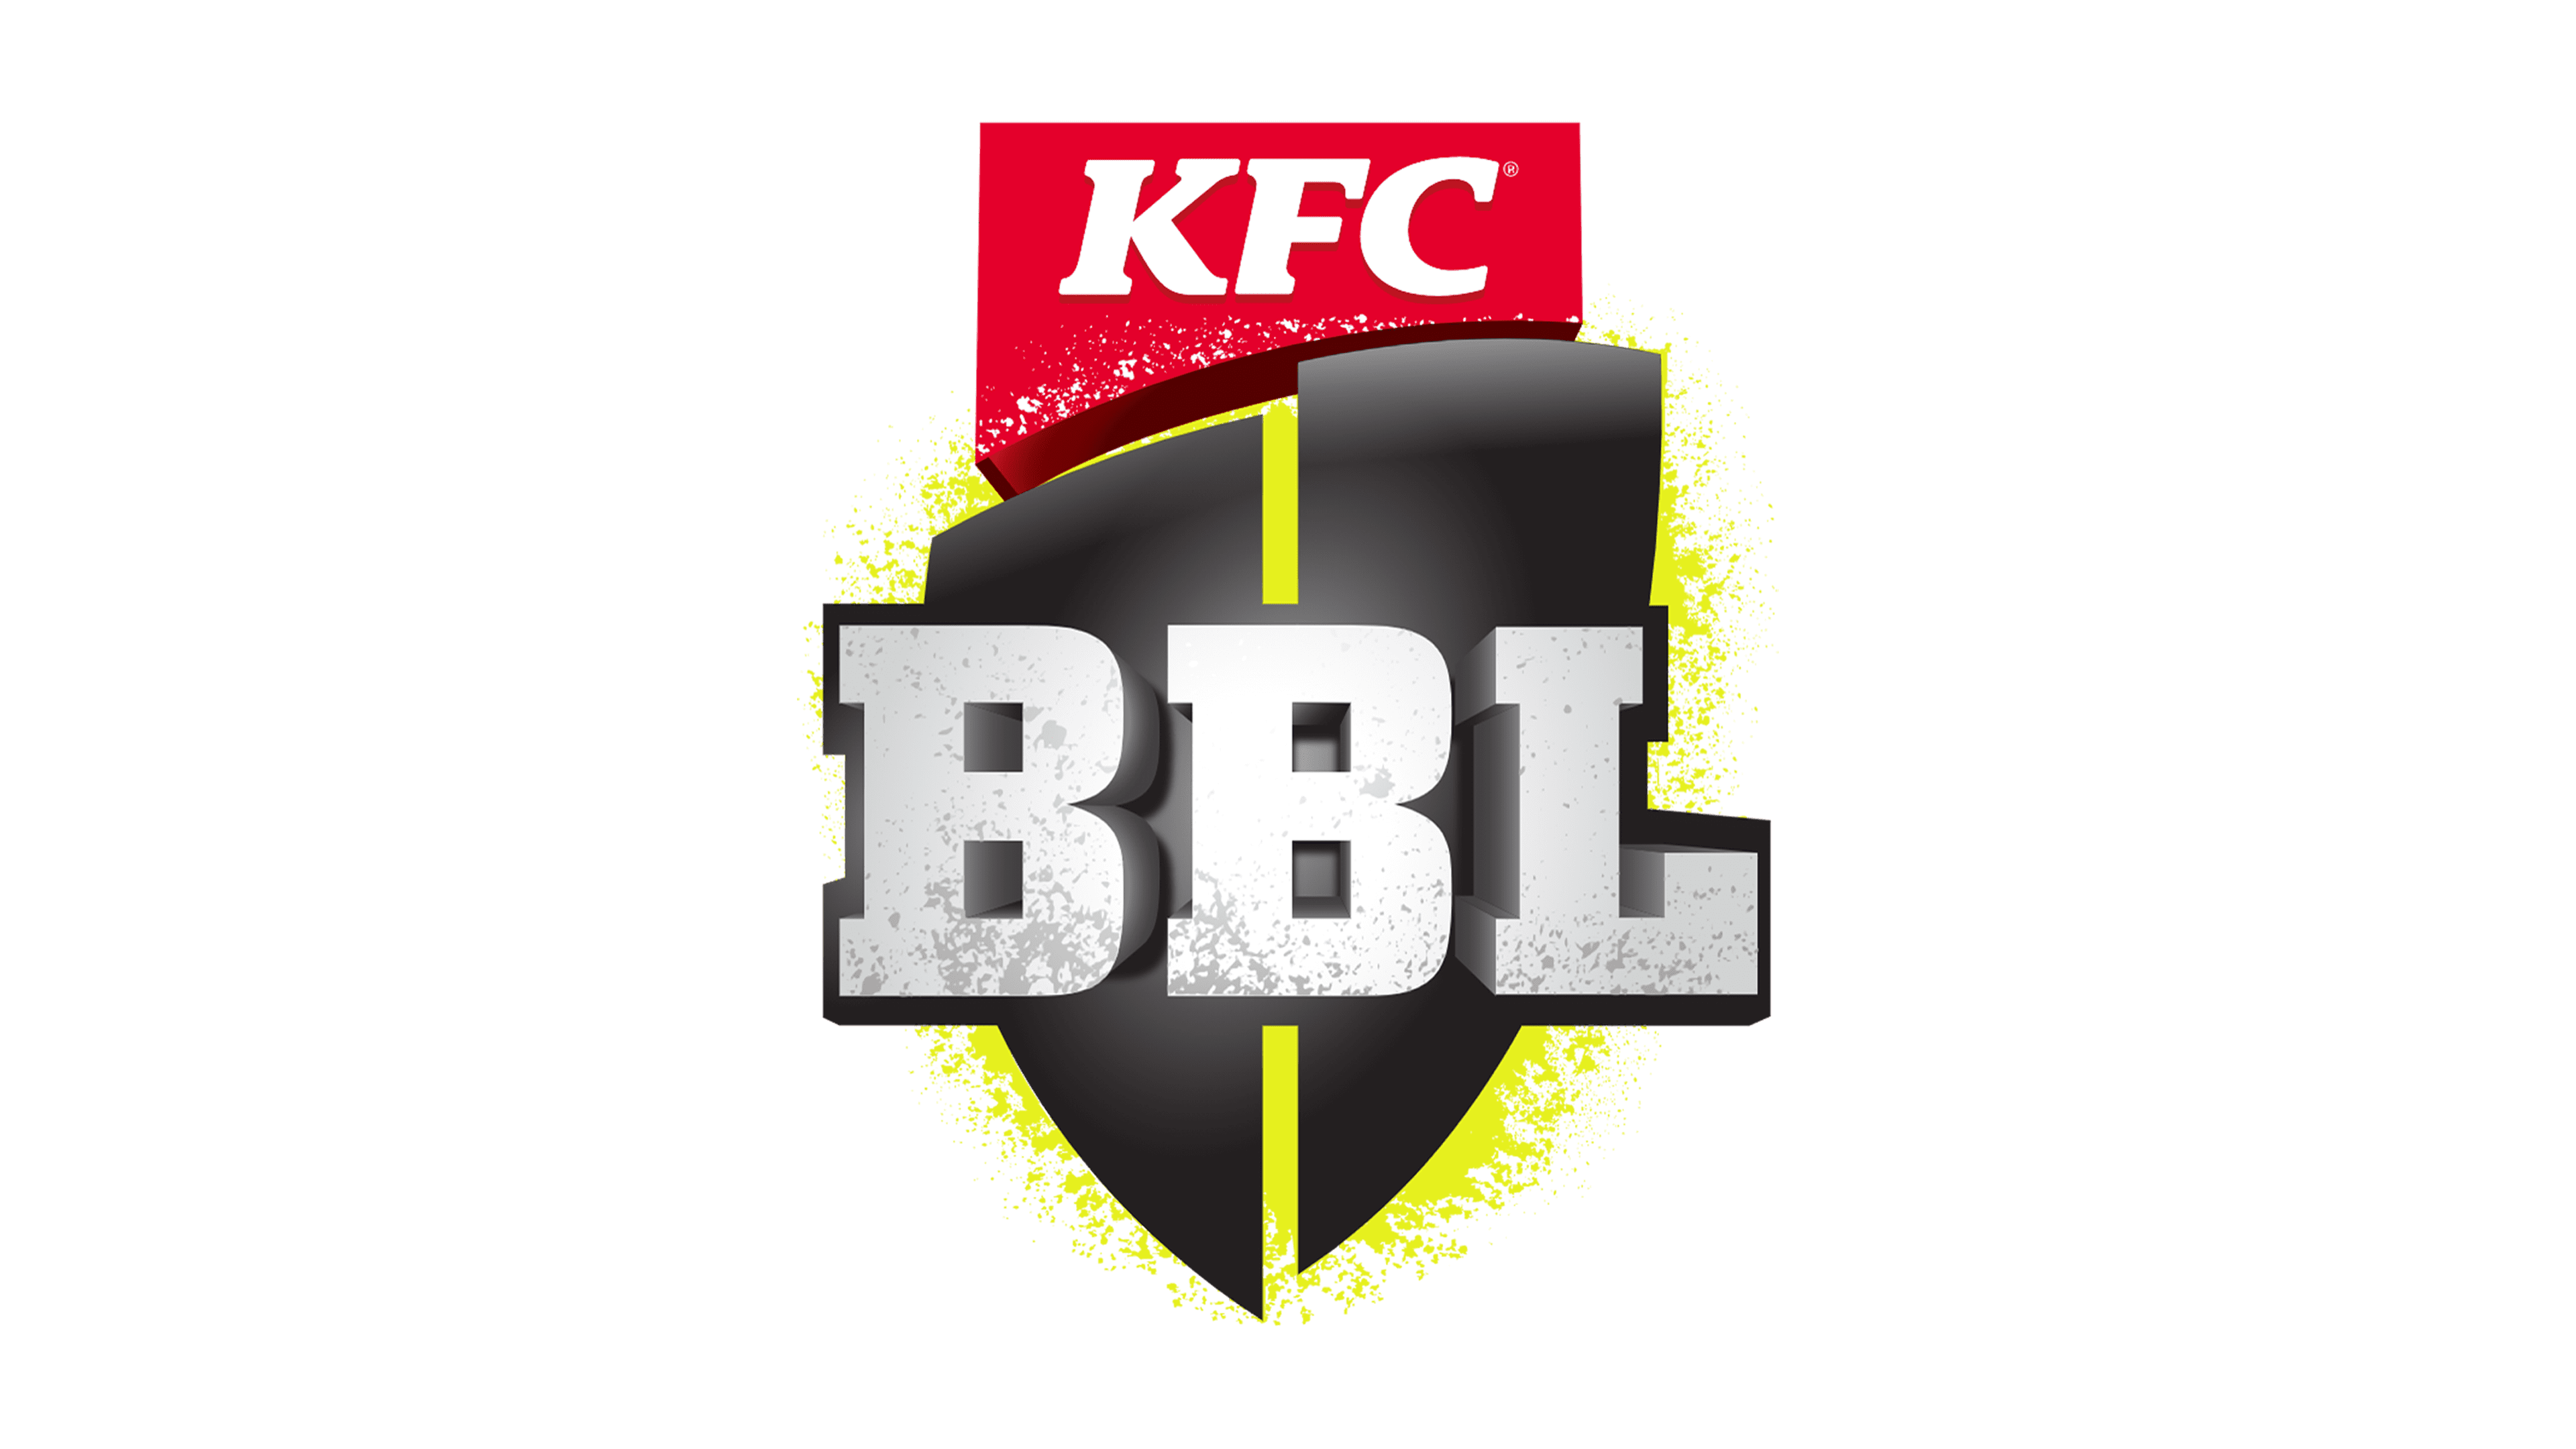 Best Cricket Logo Design, HD Png Download - kindpng